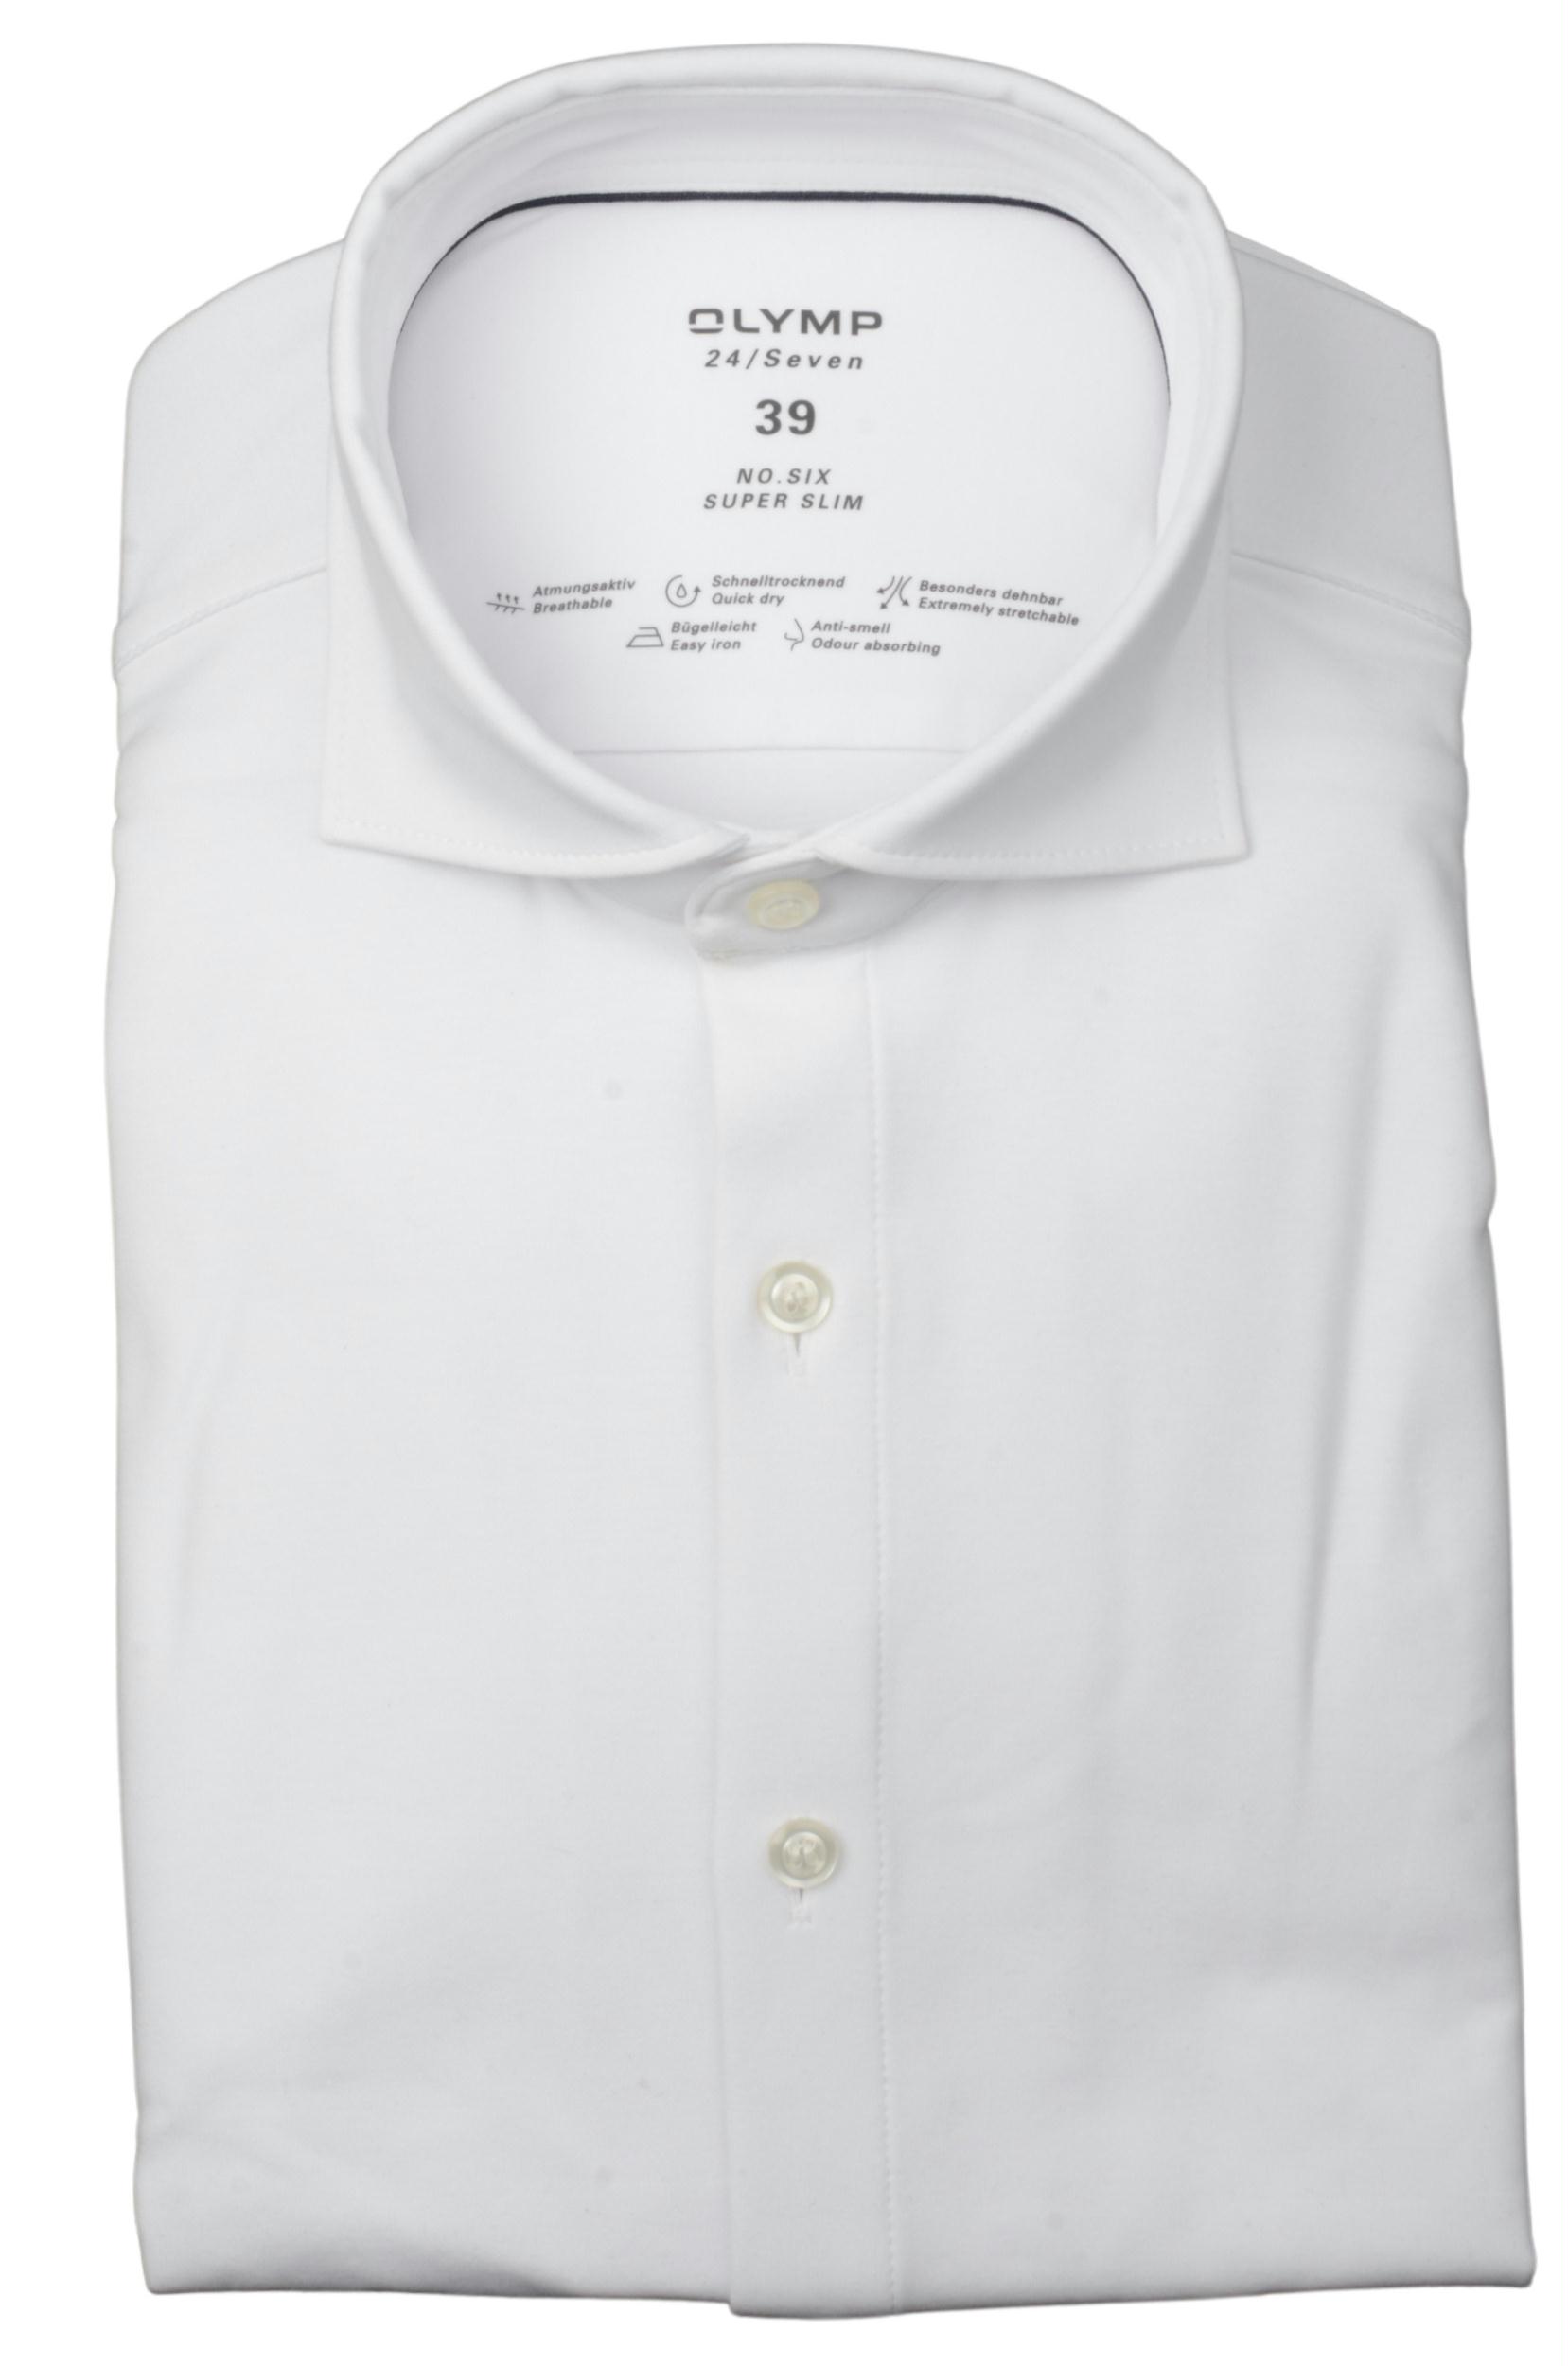 Olymp Business hemd lange mouw Wit Jersey overhemd SF 2502/84 250284/00